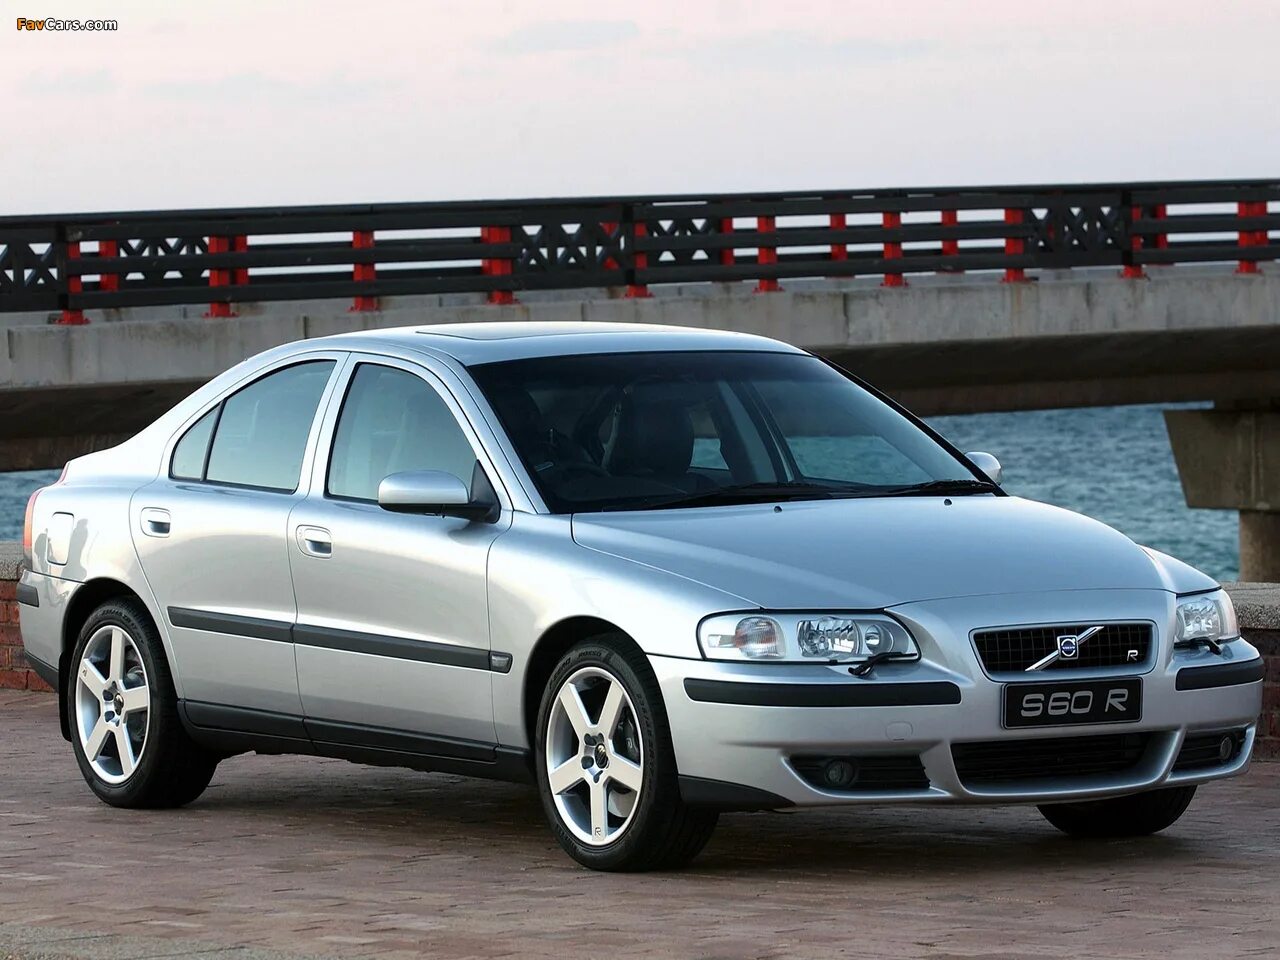 Volvo s60 r 2004. Вольво s60 2004. Вольво с60 2004.